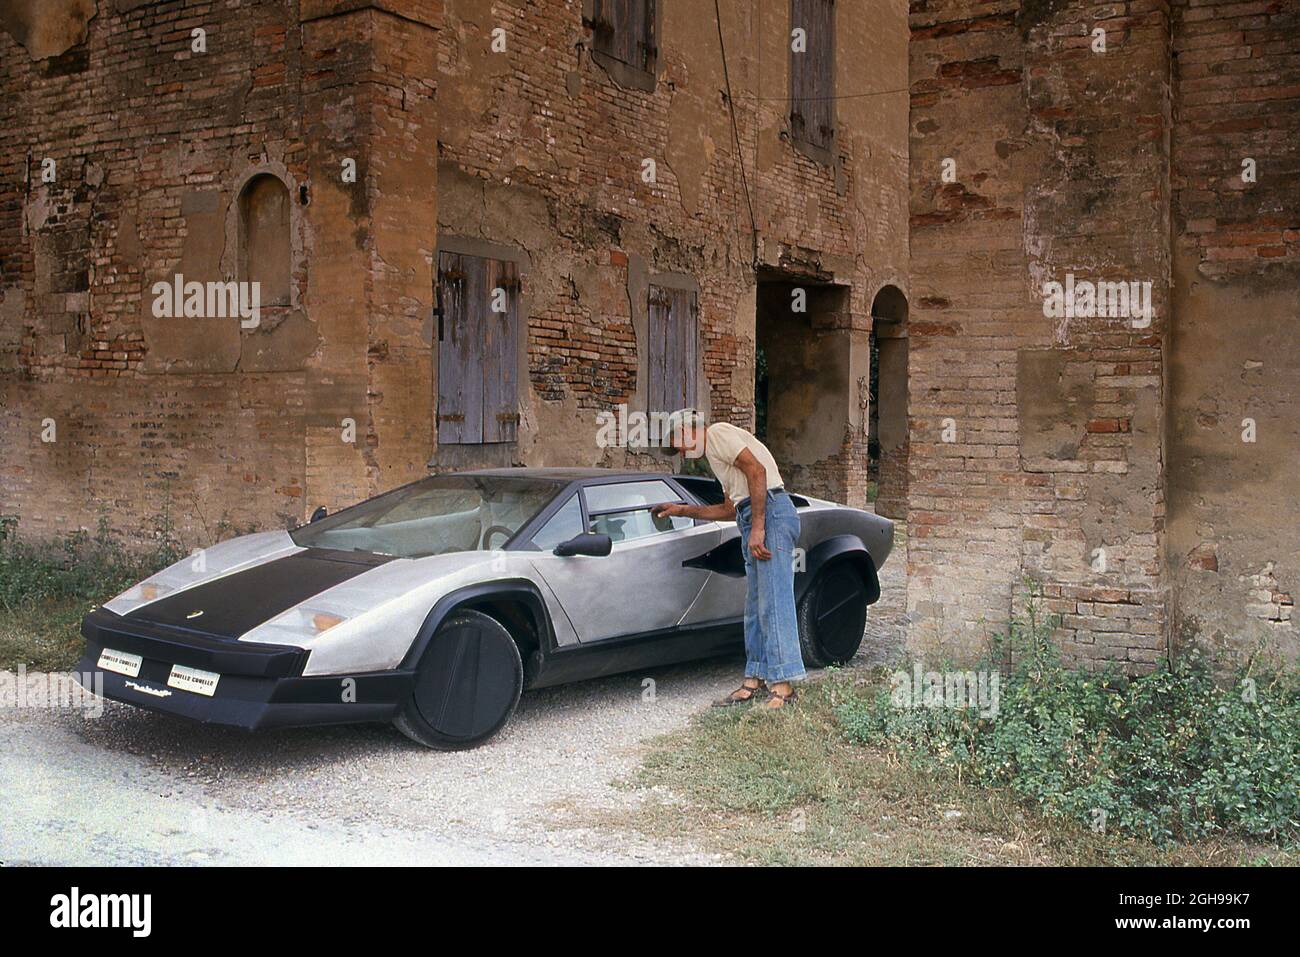 1988 Lamborghini Countach Evoluzione (fibra de carbono) prototipo de conducción en prueba cerca de la fábrica en Sant'Agata Bolognese Italia Foto de stock